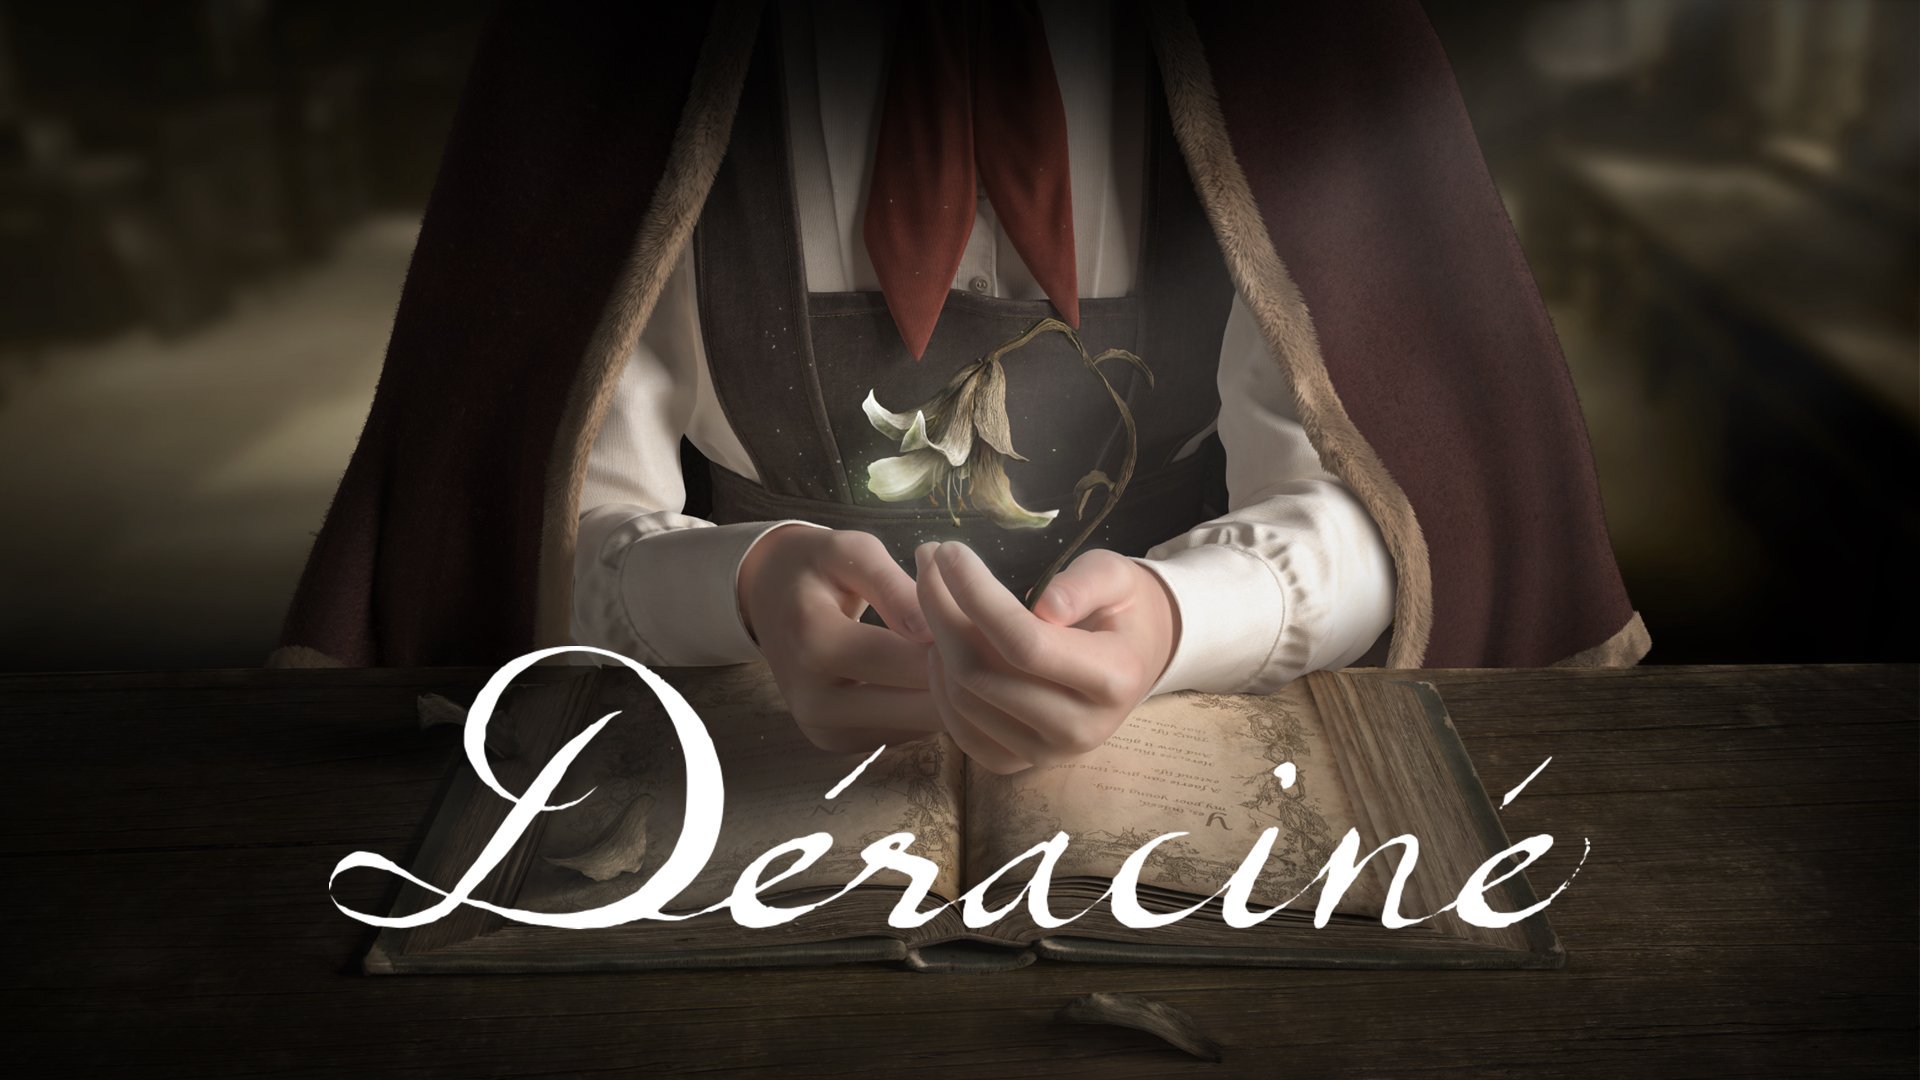 Déraciné เกม VR จากผู้สร้าง Dark Souls เตรียมวางจำหน่าย 6 พฤศจิกายนนี้